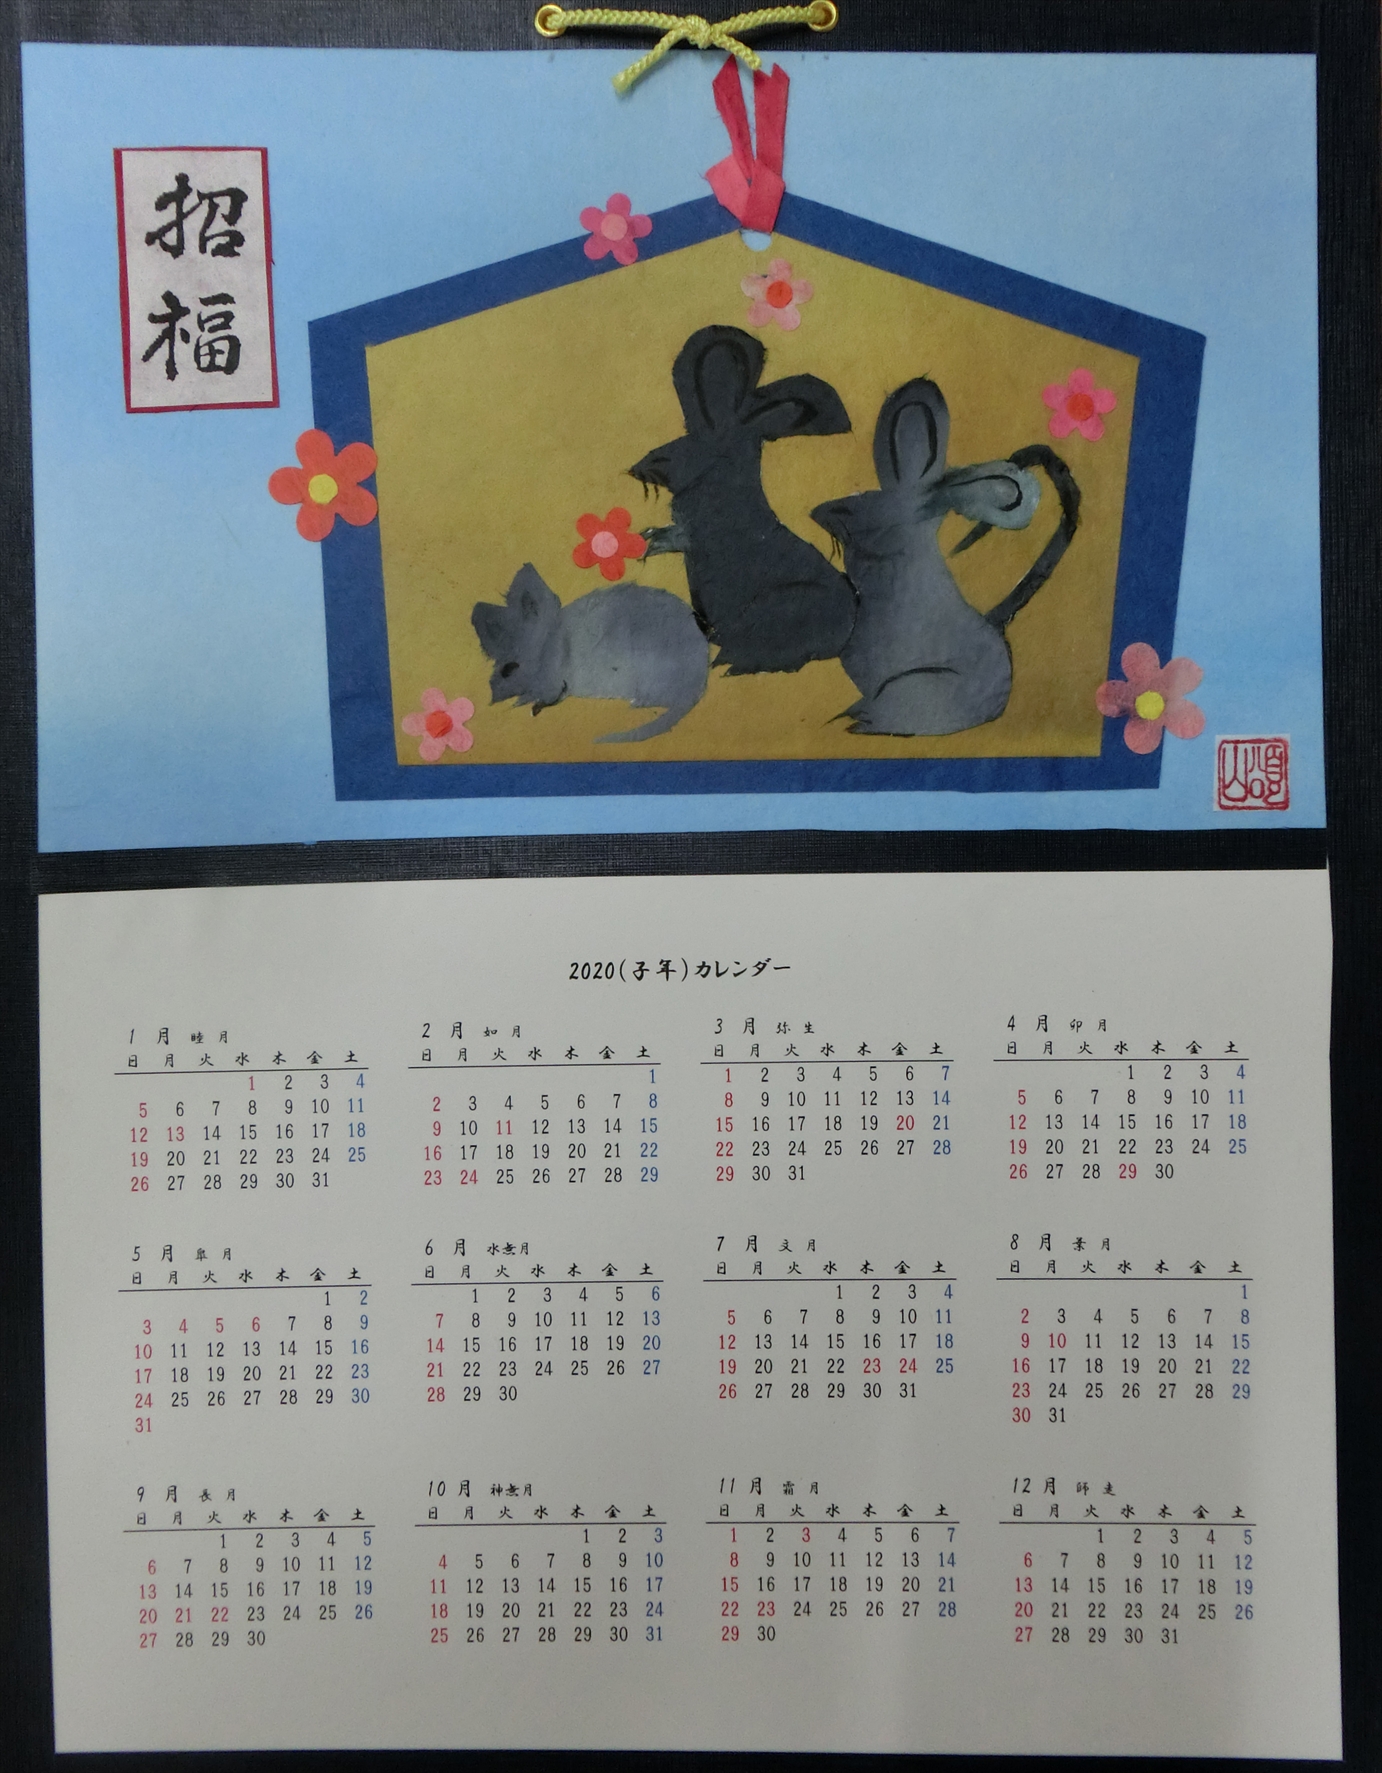 戸田幸子の「2020和紙絵カレンダー」